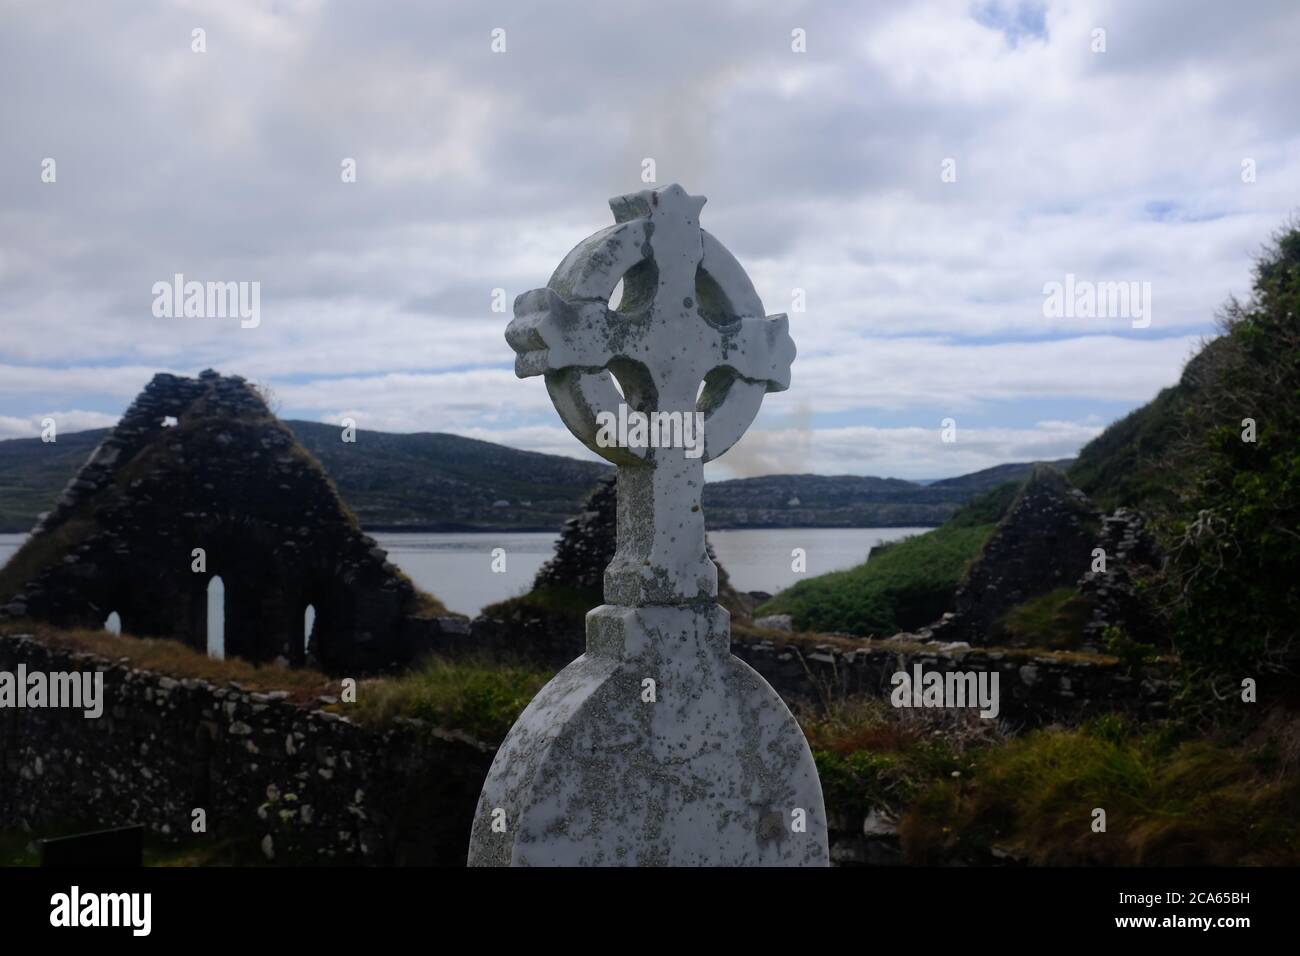 Marcher sur le Kerry Way en 2019 dans le comte Kerry dans le sud de l'Irlande en longiant la section de la péninsule d'Iveragh Caherdaniel à Waterville Banque D'Images